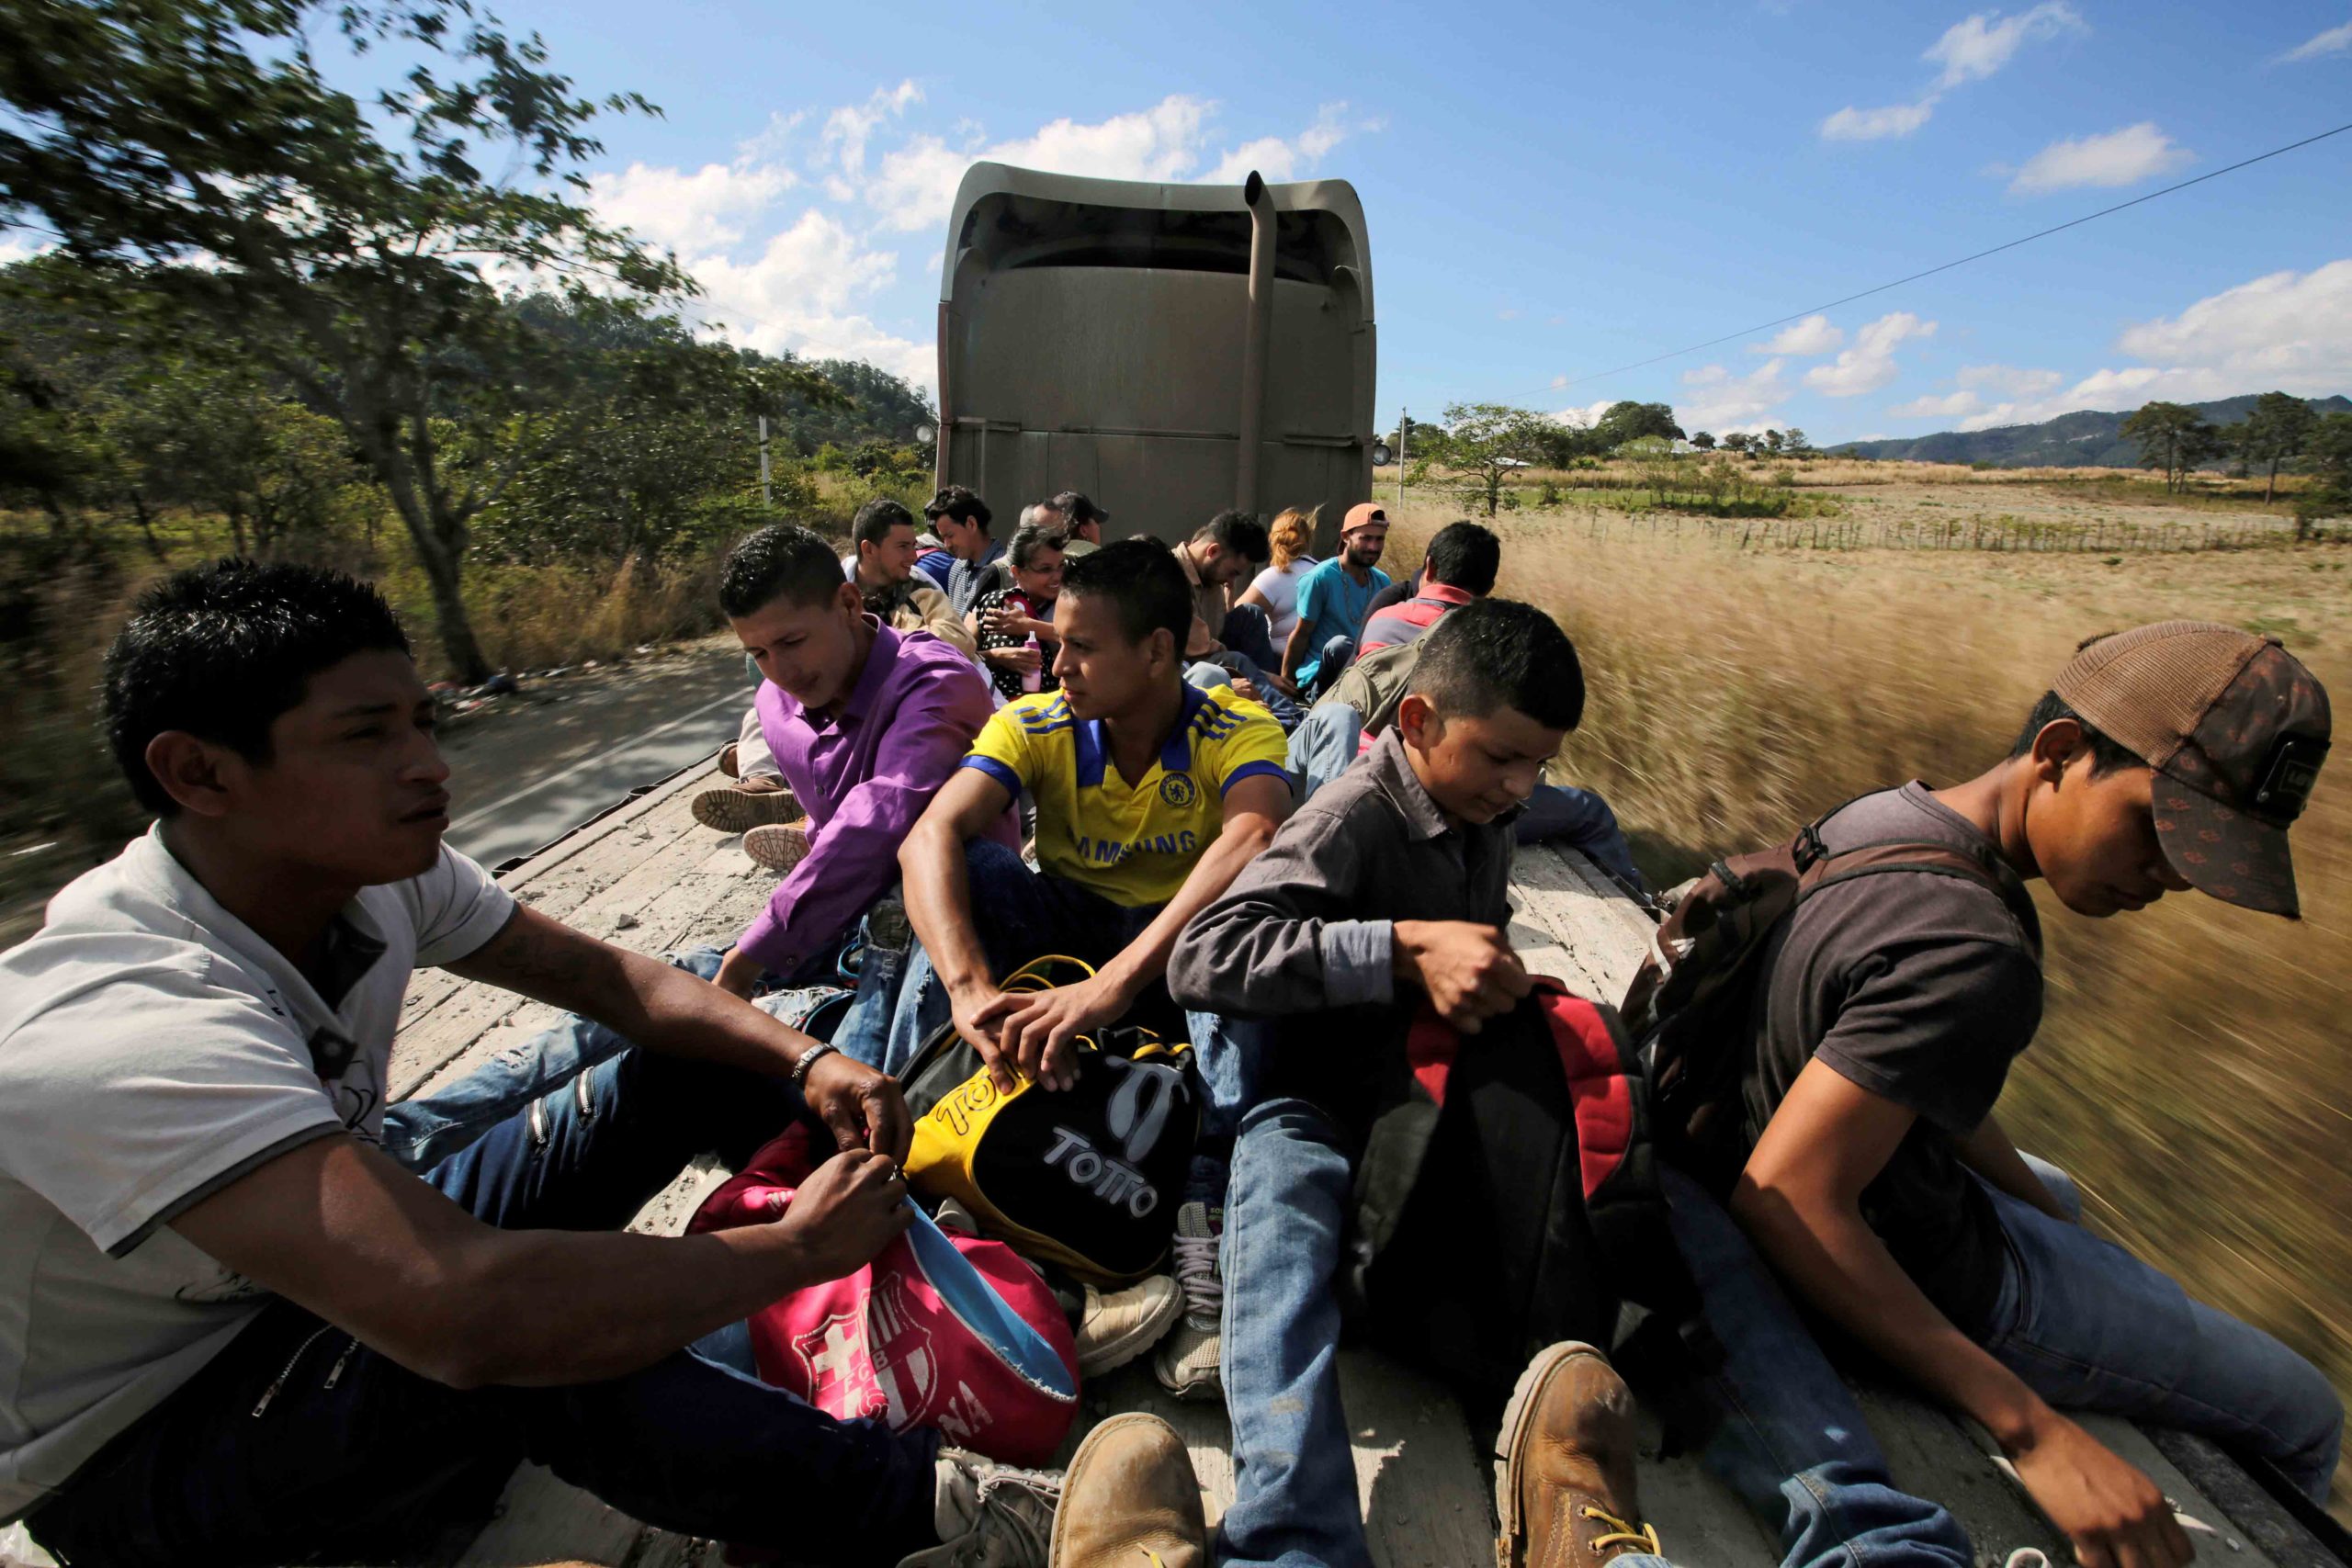 Un grupo de migrantes se traslada poniendo en riesgo sus vidas para intentar llegar a los Estados Unidos. Archivo/Jorge Cabrera